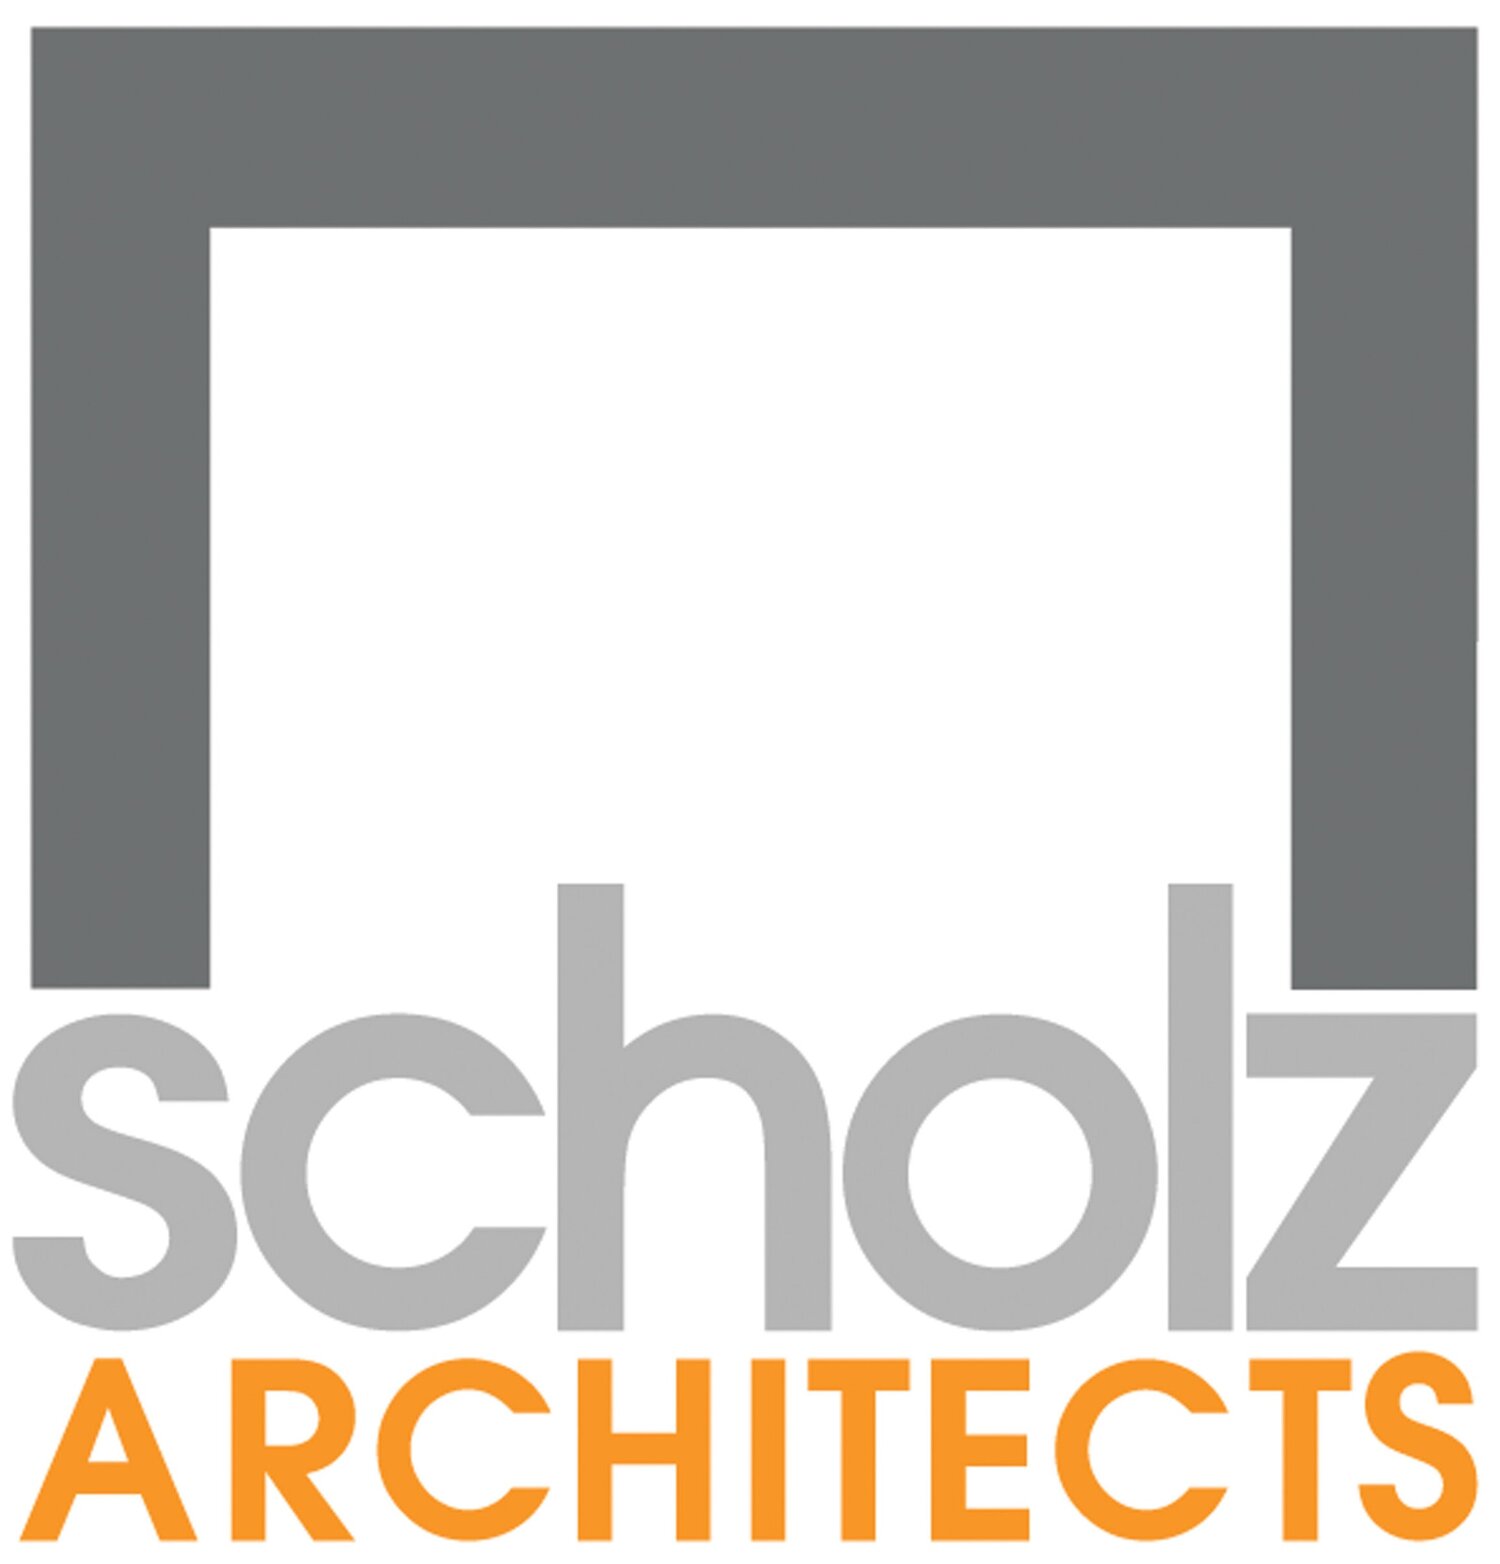 Scholz Architects 